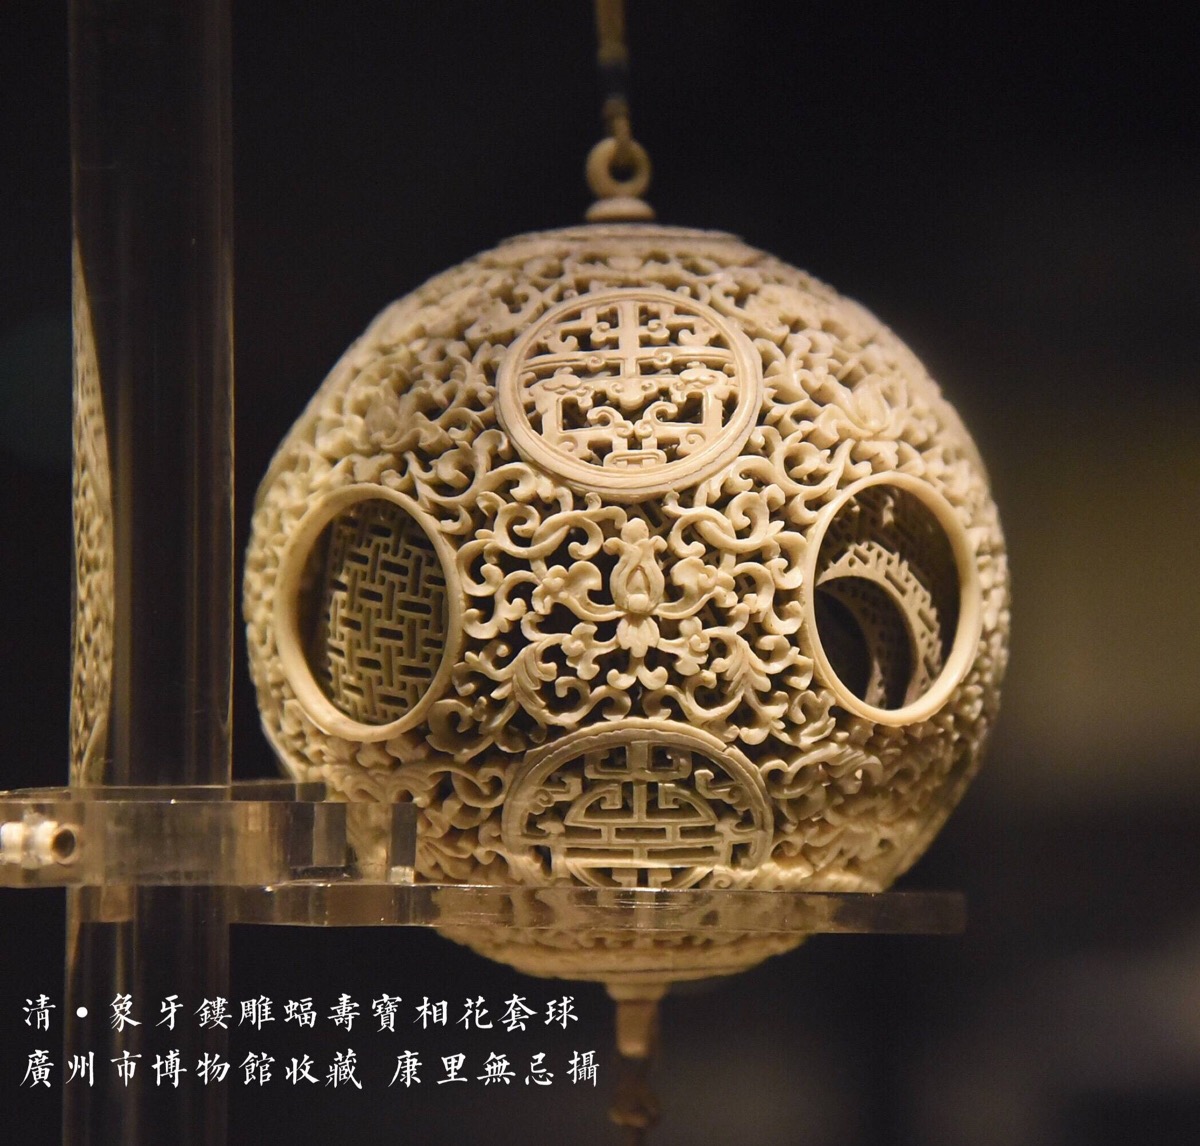 清·象牙镂雕蝠寿宝相花套球,广州市博物馆收藏